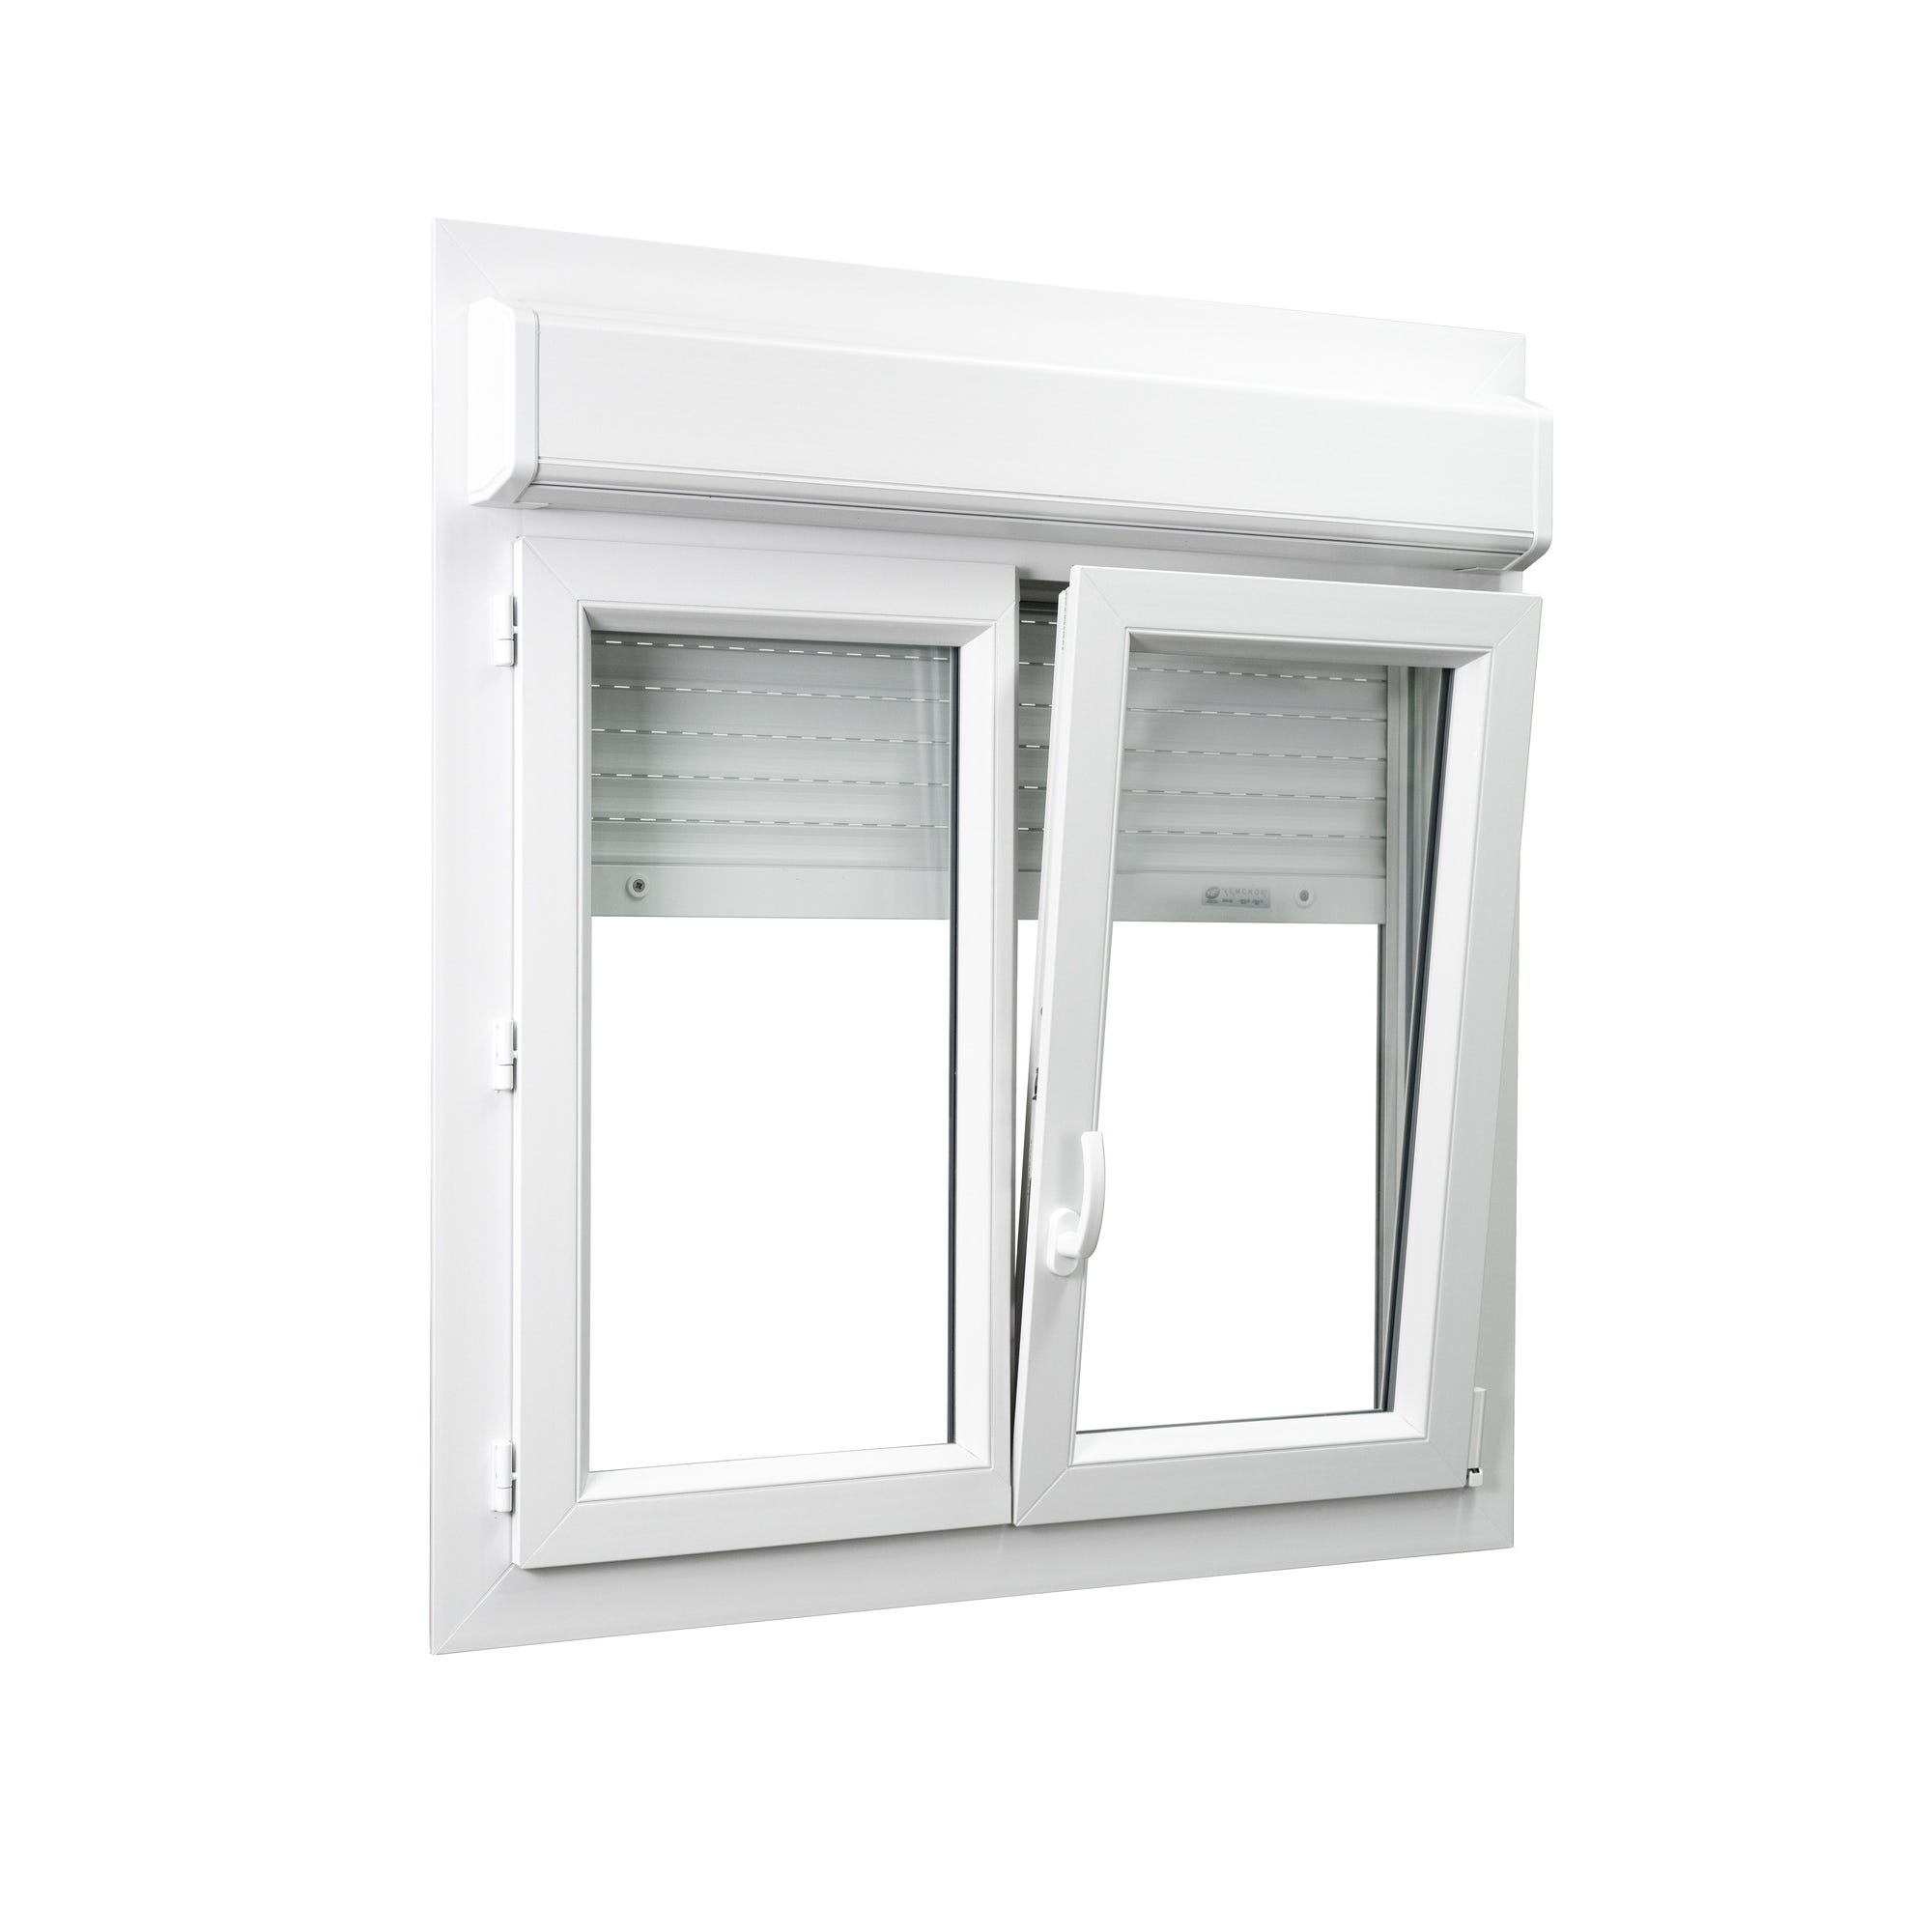 Fenêtre PVC avec volet roulant intégré monobloc Ob 2 vantaux H.135 x L.140 cm - GROSFILLEX 1